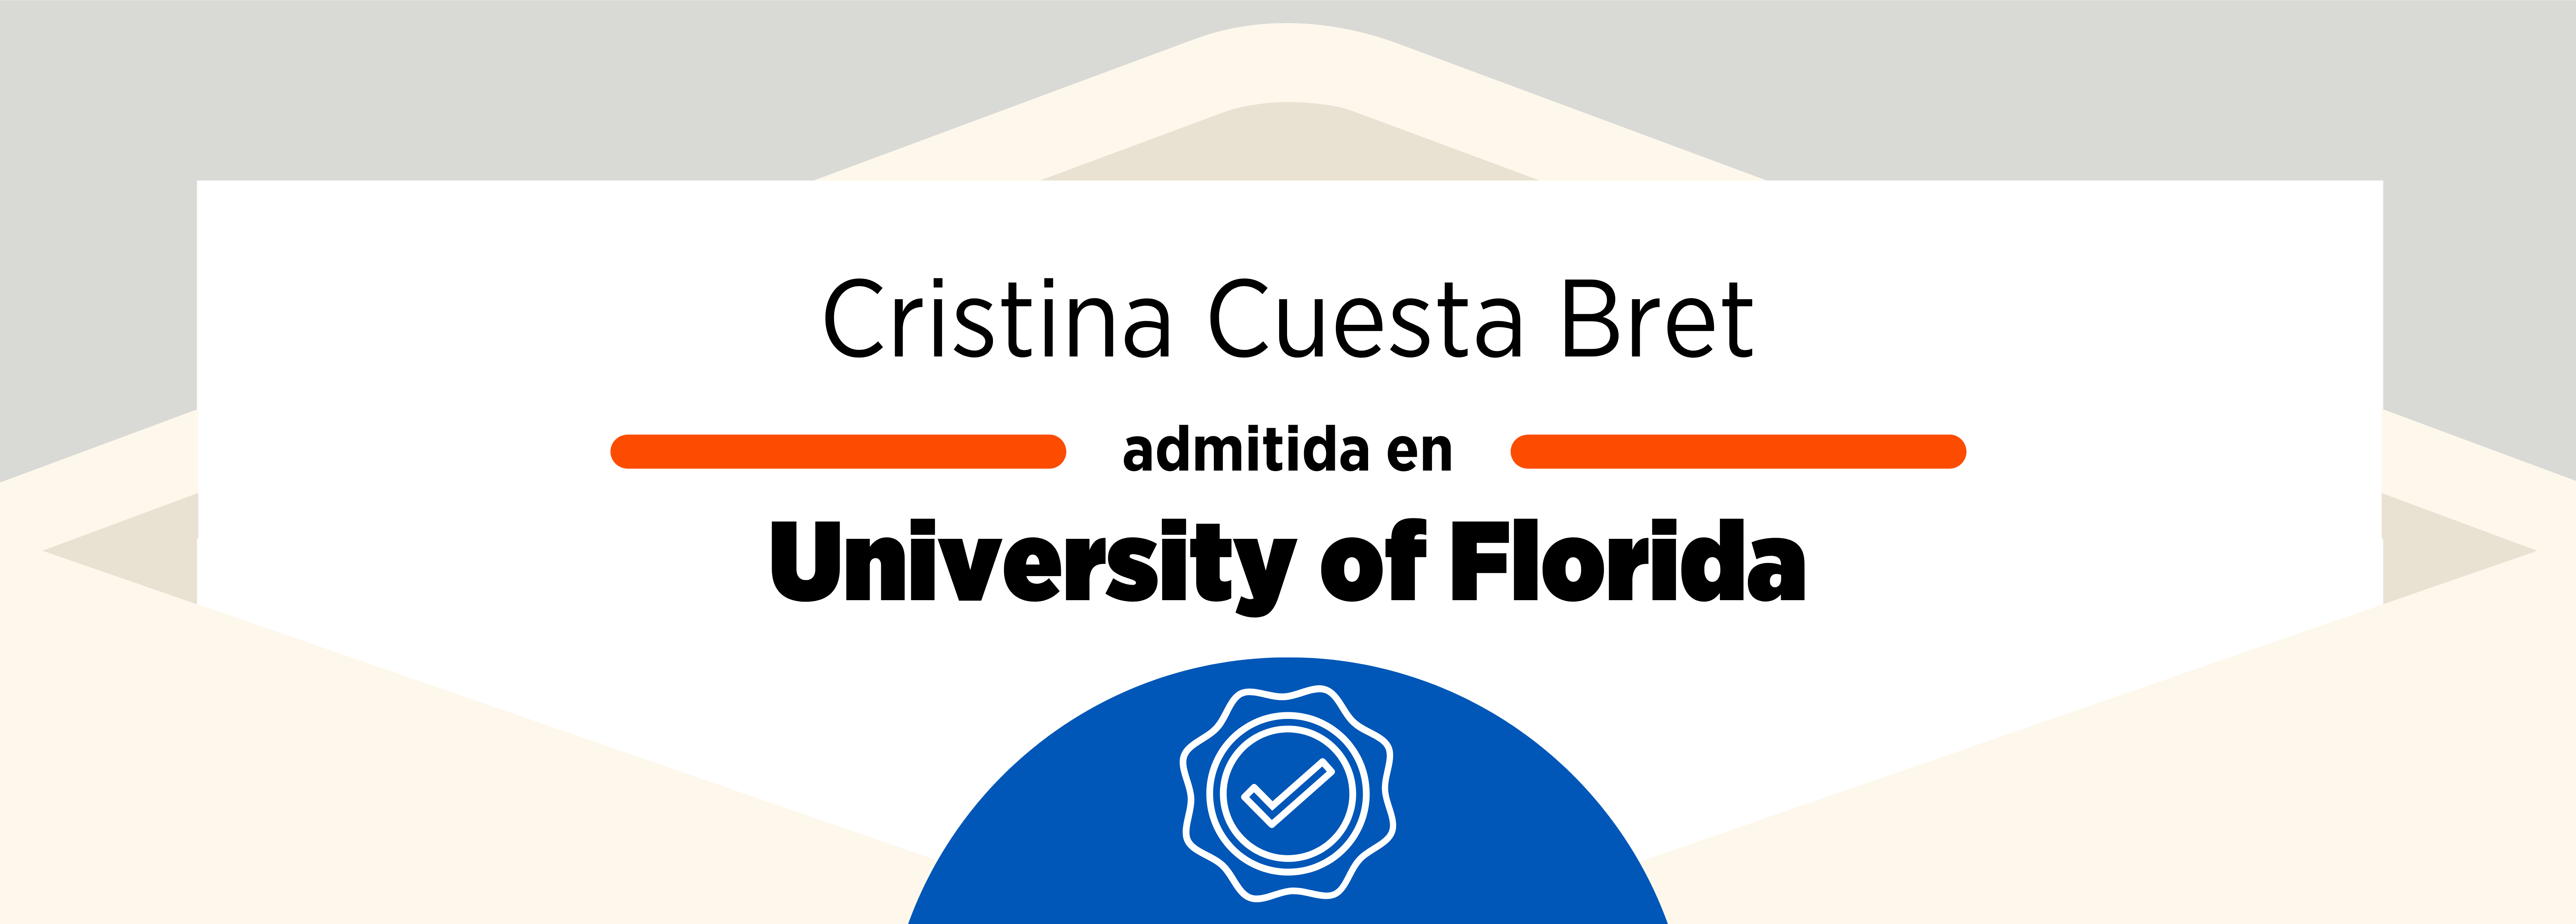 Admissions 2021: Cristina Cuesta Bret & the University of Florida